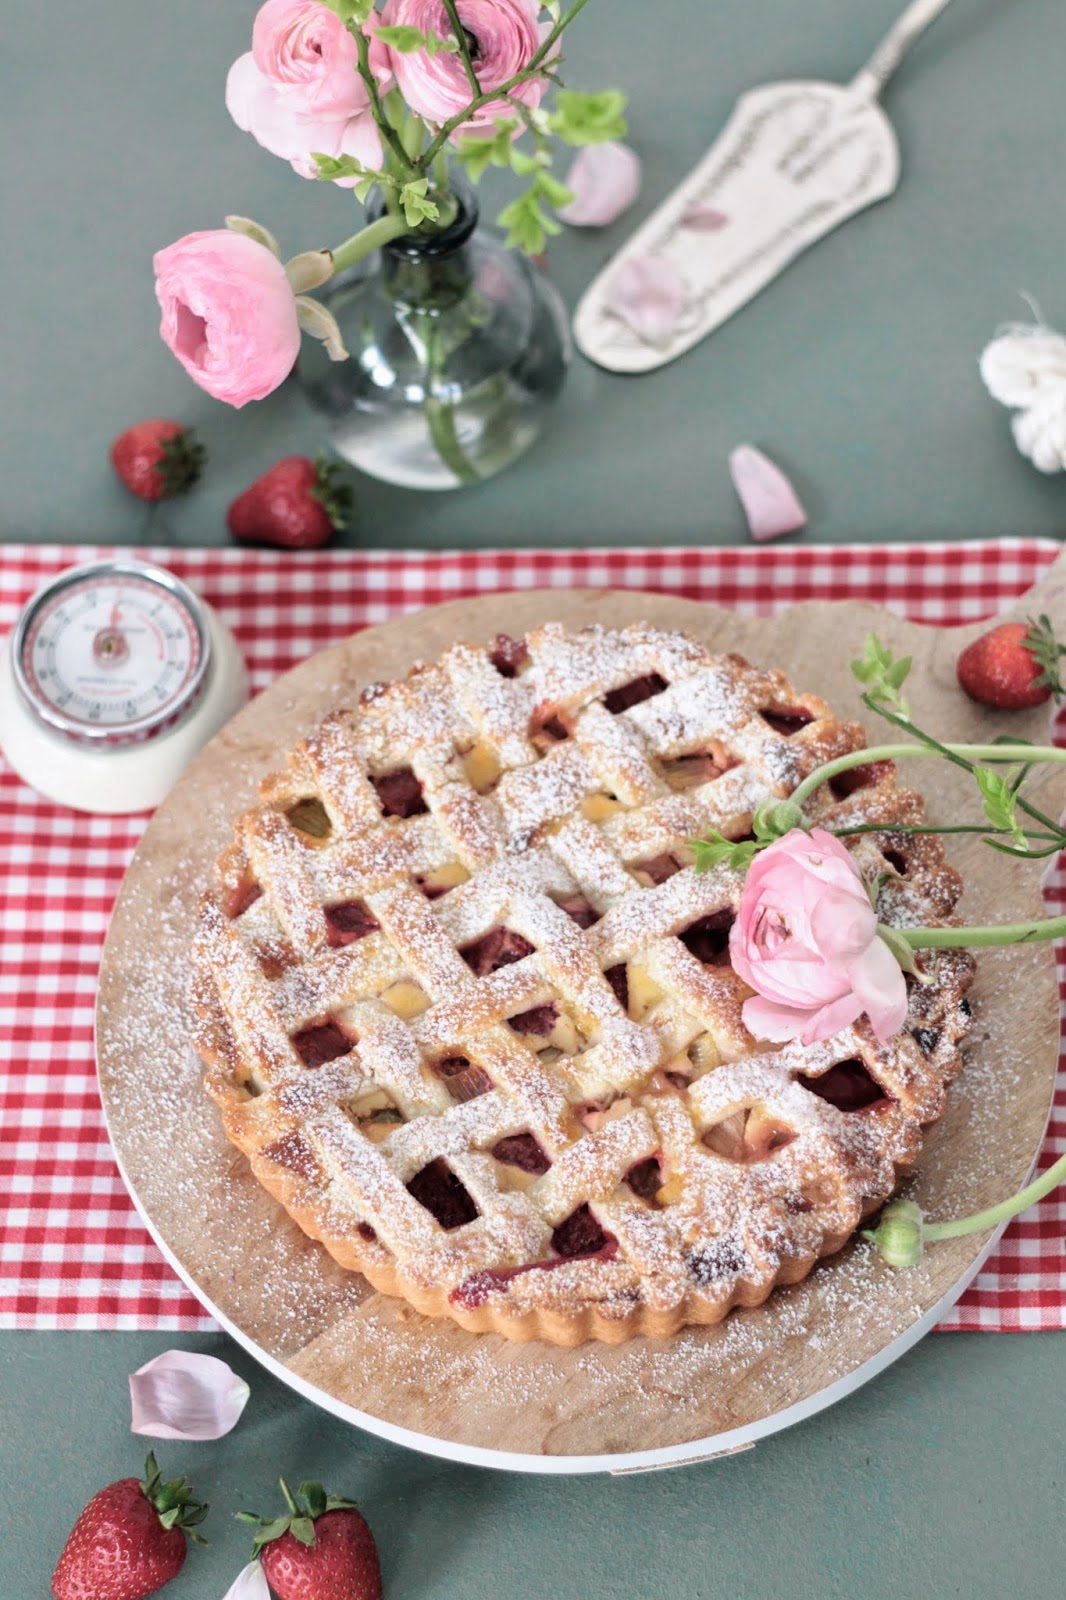 Gaston Le Gourmet: Rhabarber-Erdbeer Tarte